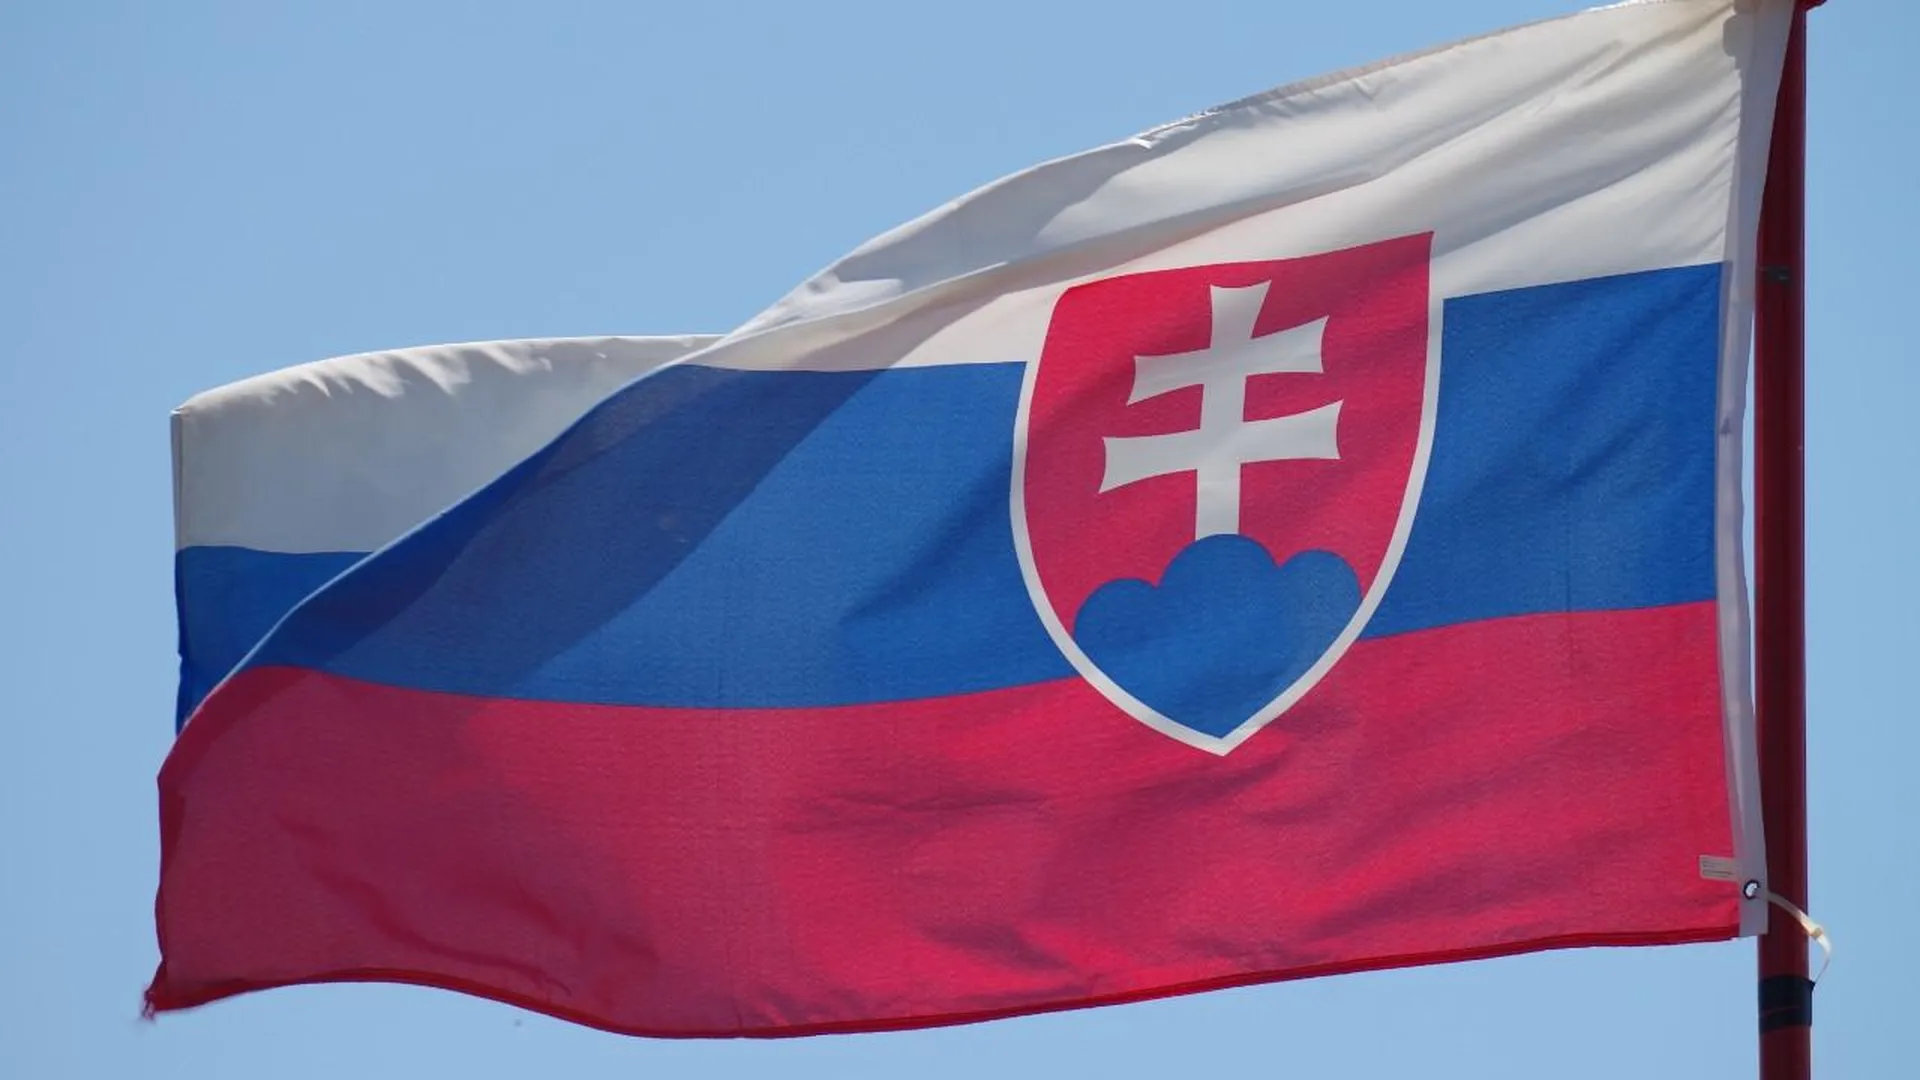 Вице-премьер Словакии заявил, что жизни Фицо после покушения ничего не угрожает